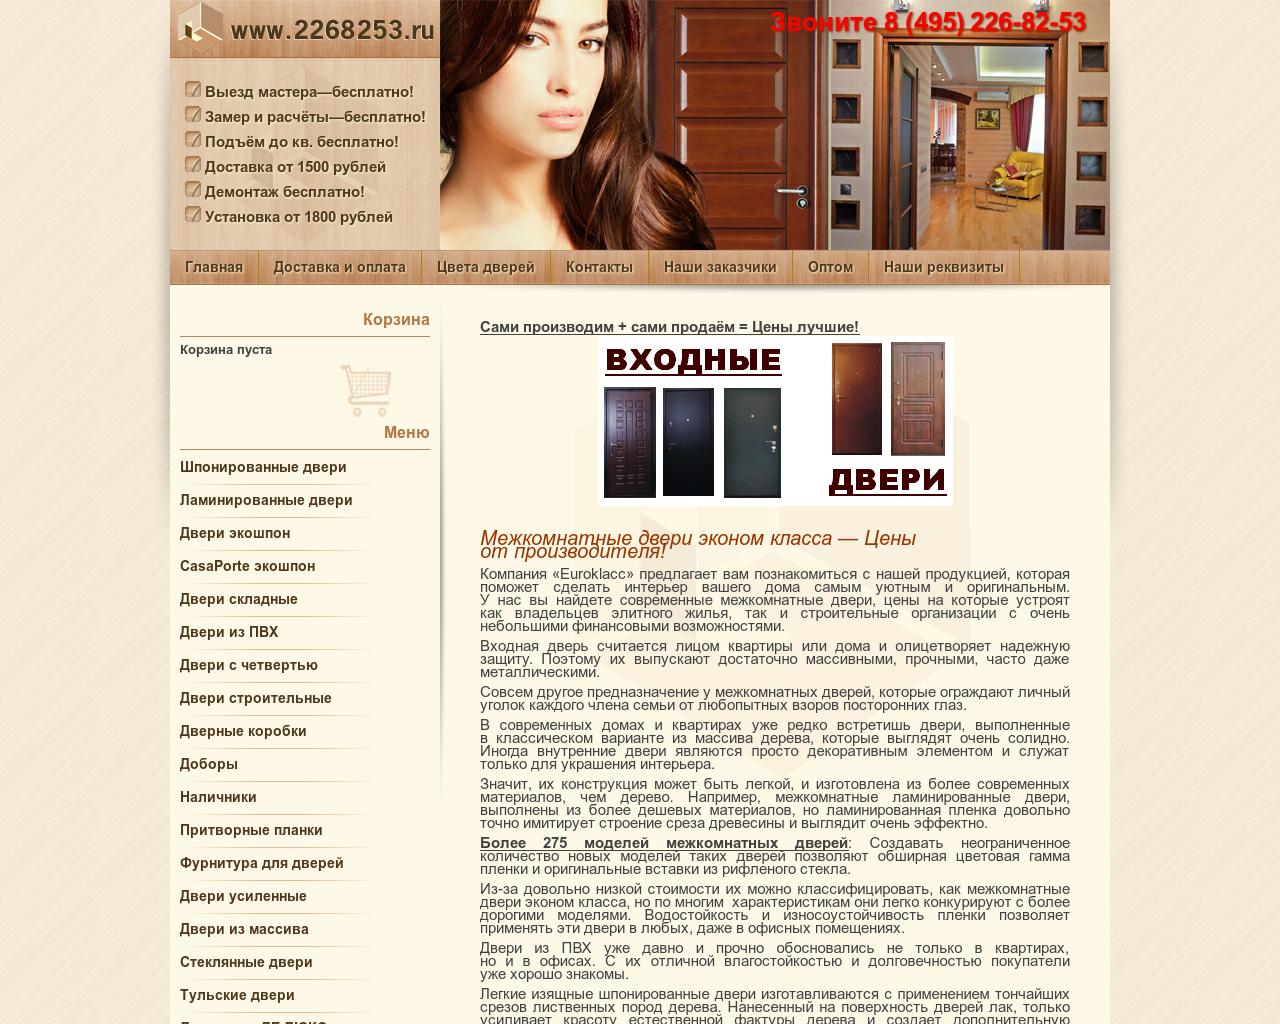 Изображение сайта 2268253.ru в разрешении 1280x1024